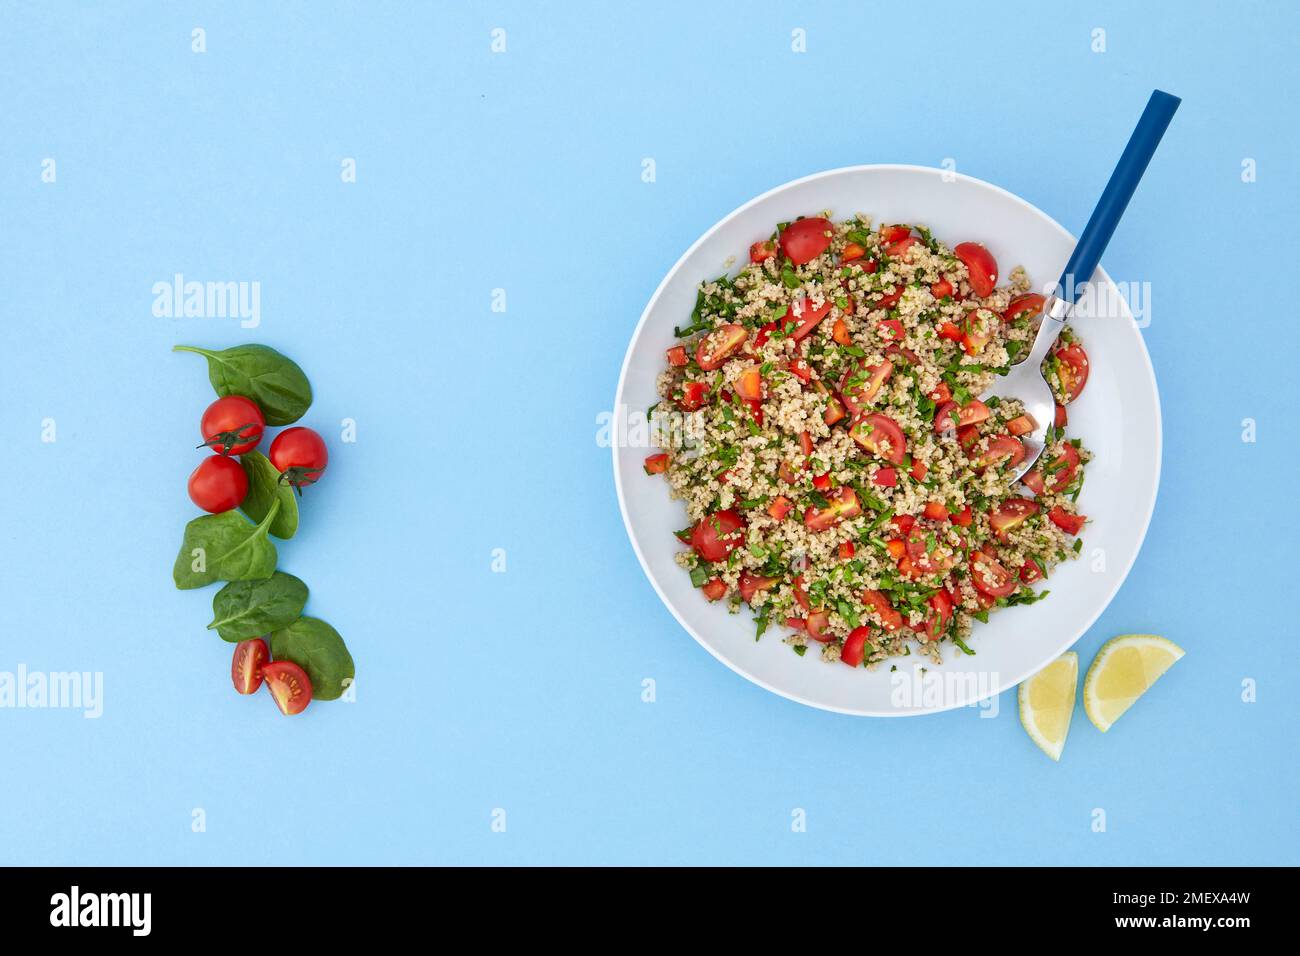 Salade couscous aux épinards et aux tomates sur fond bleu Banque D'Images